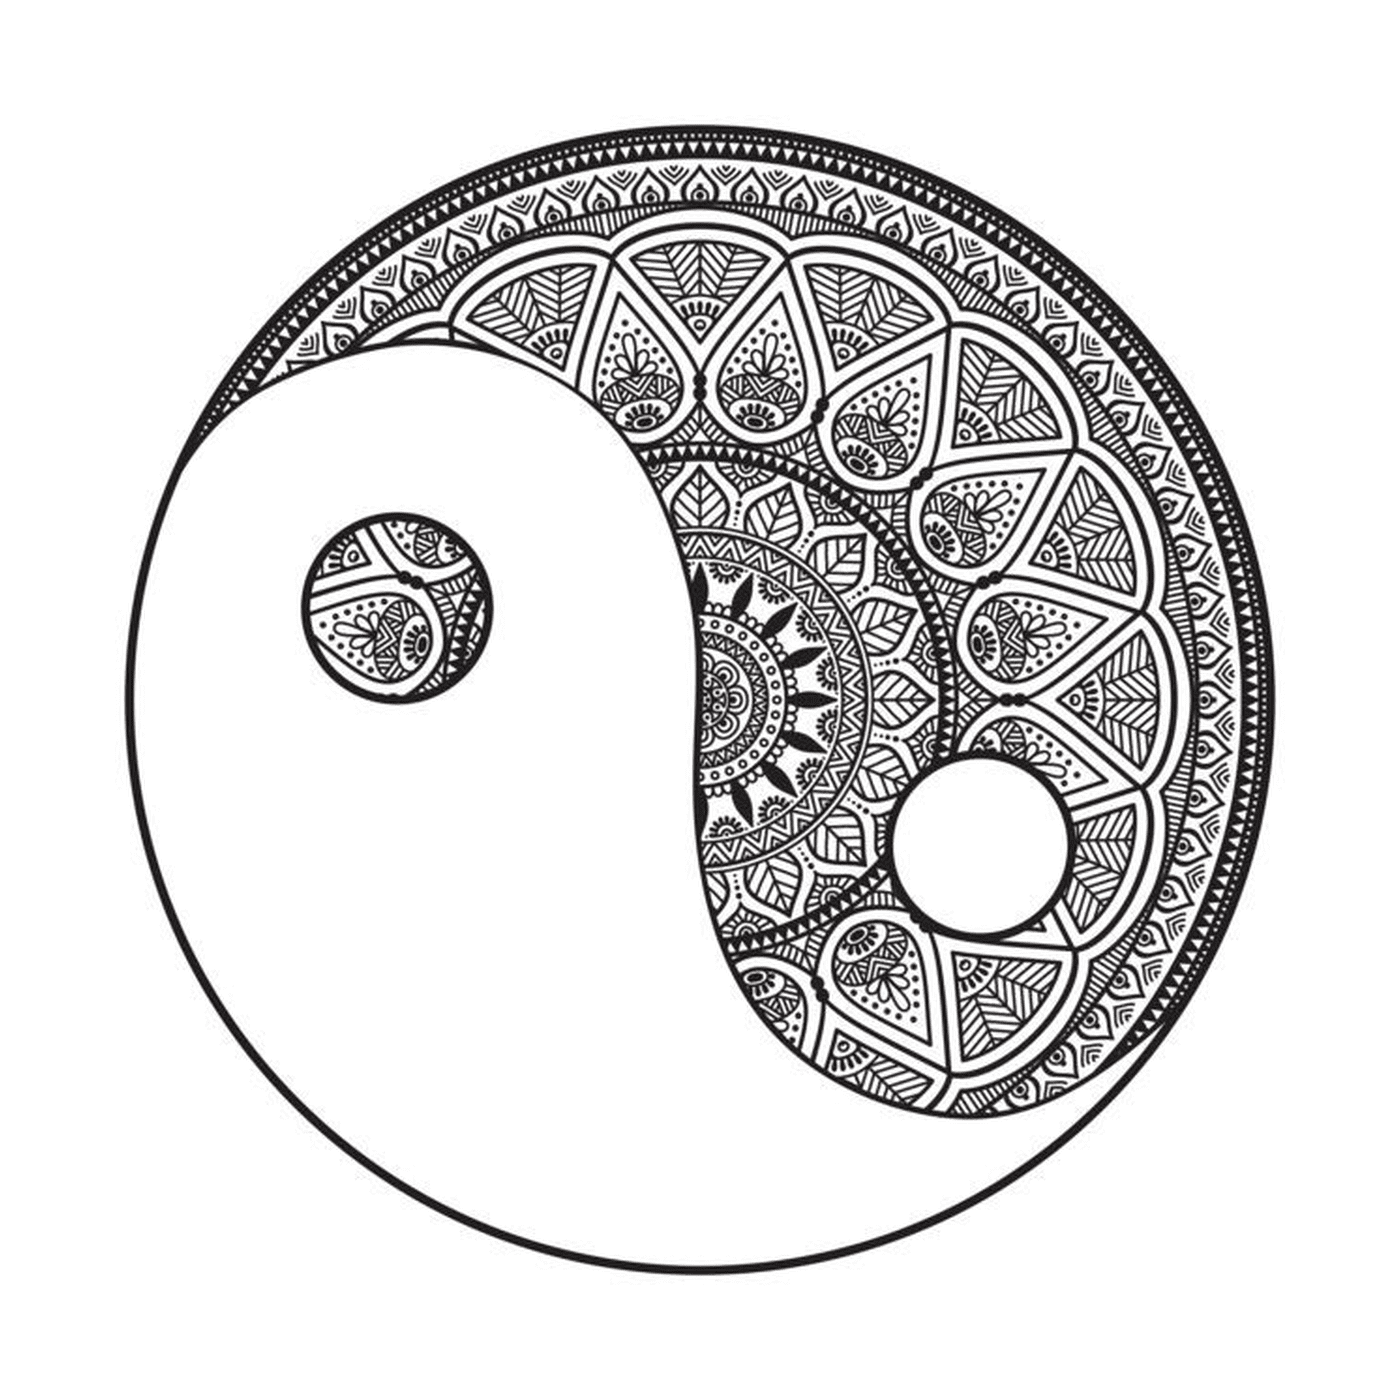   Yin et yang dans un mandala 